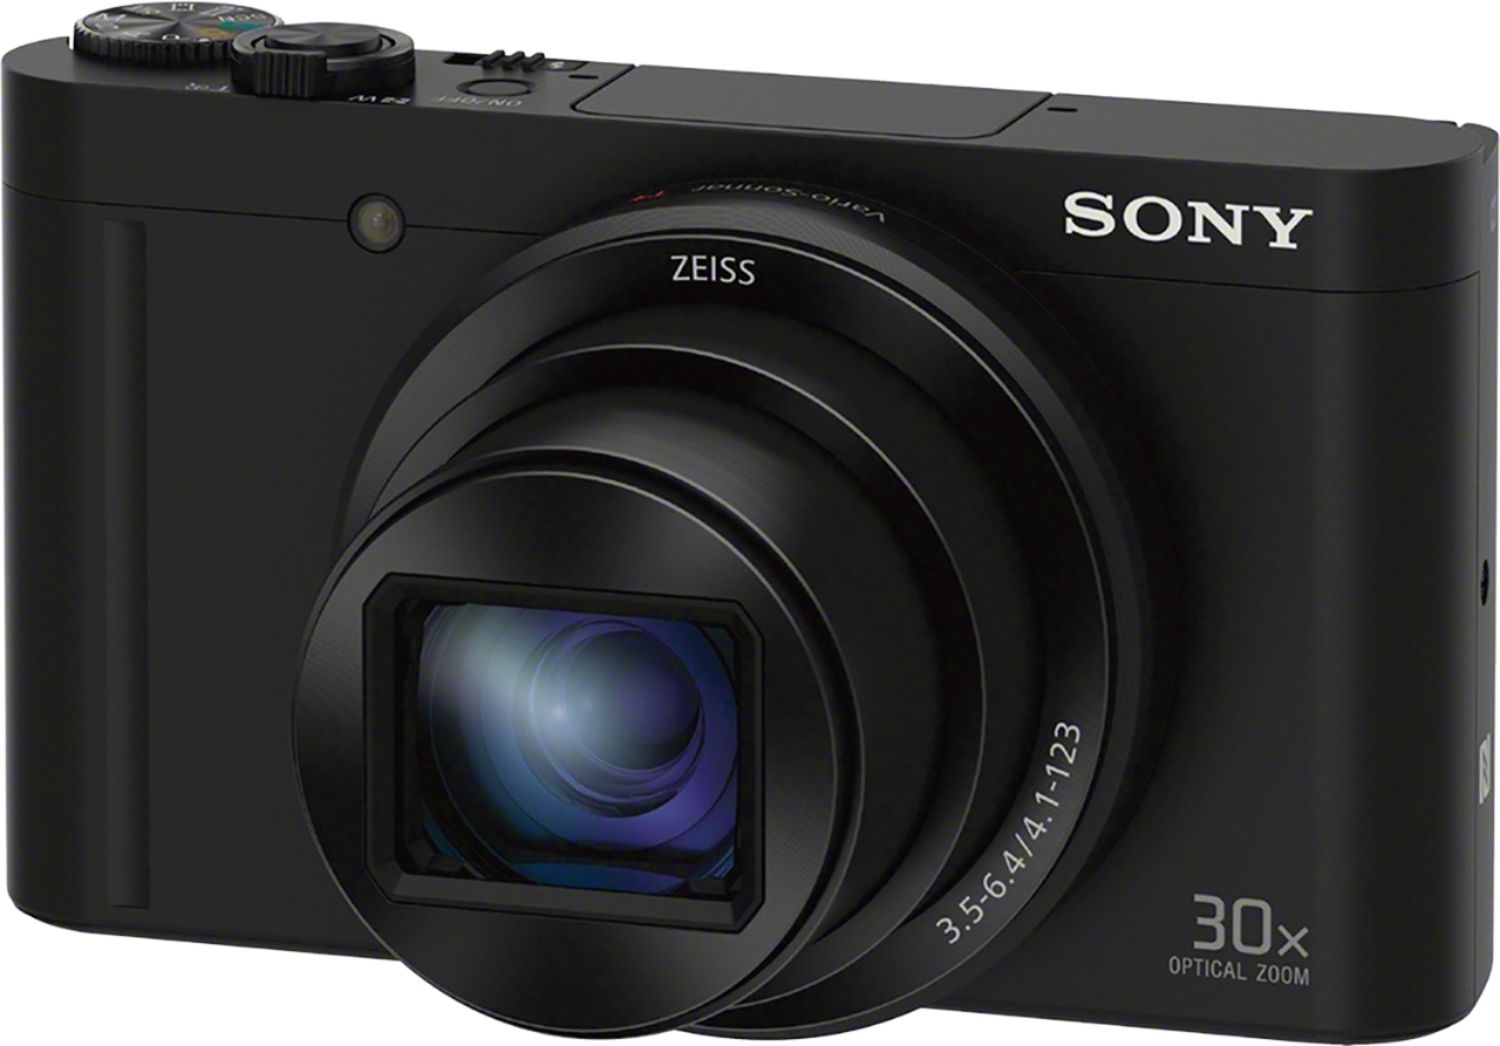 Best Buy: Sony DSC-WX500 18.2-Megapixel Digital Camera Black 